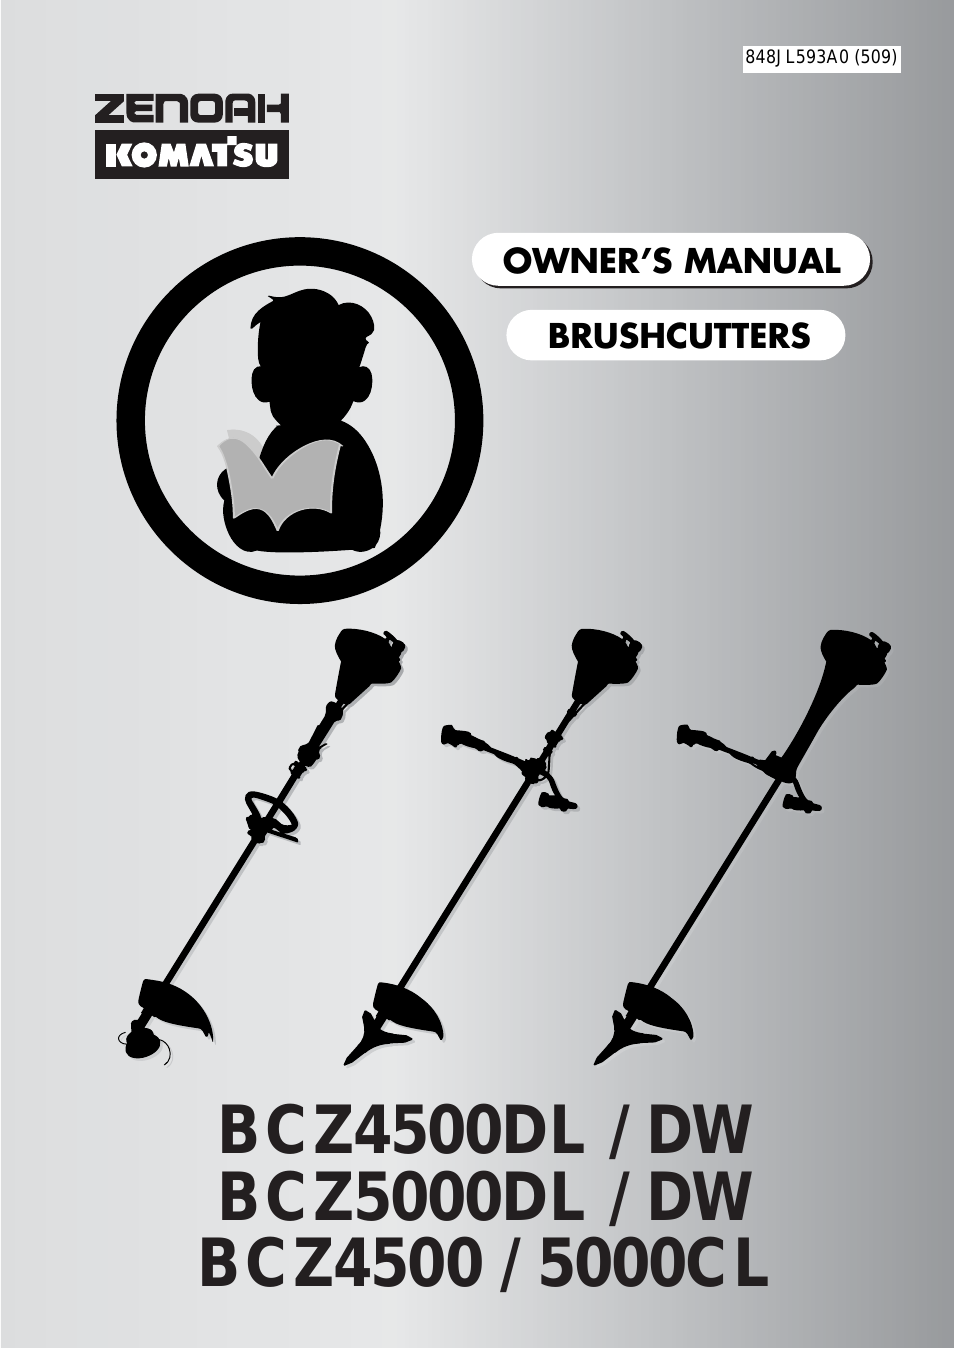 BCZ5000DL / DW